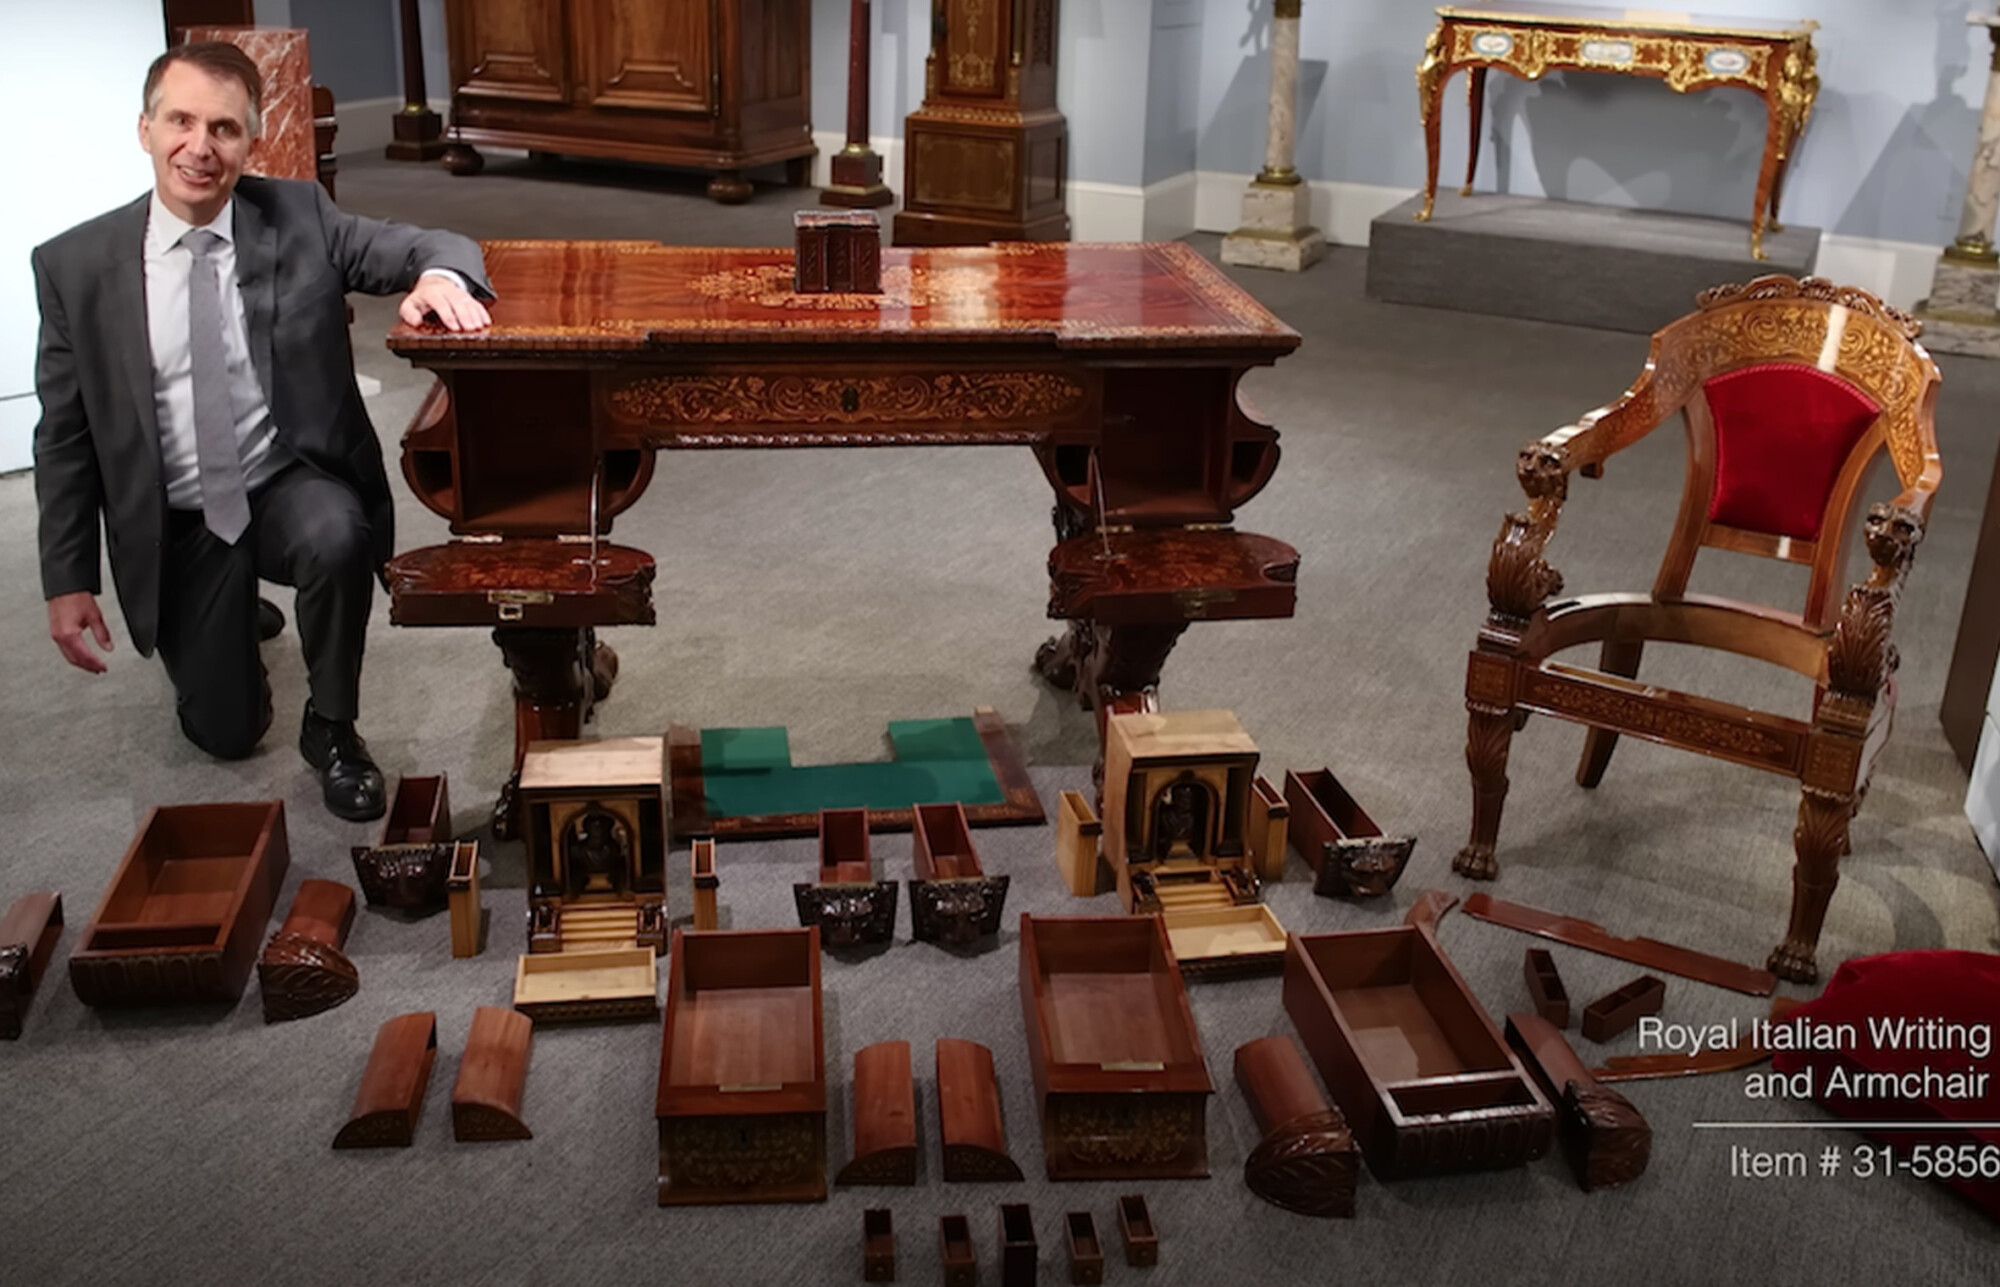 Bill Rau de MS Rau muestra el escritorio del rey Carlo Alberto con sus compartimentos secretos totalmente abiertos y expuestos. (Cortesía de MS Rau, Nueva Orleans)